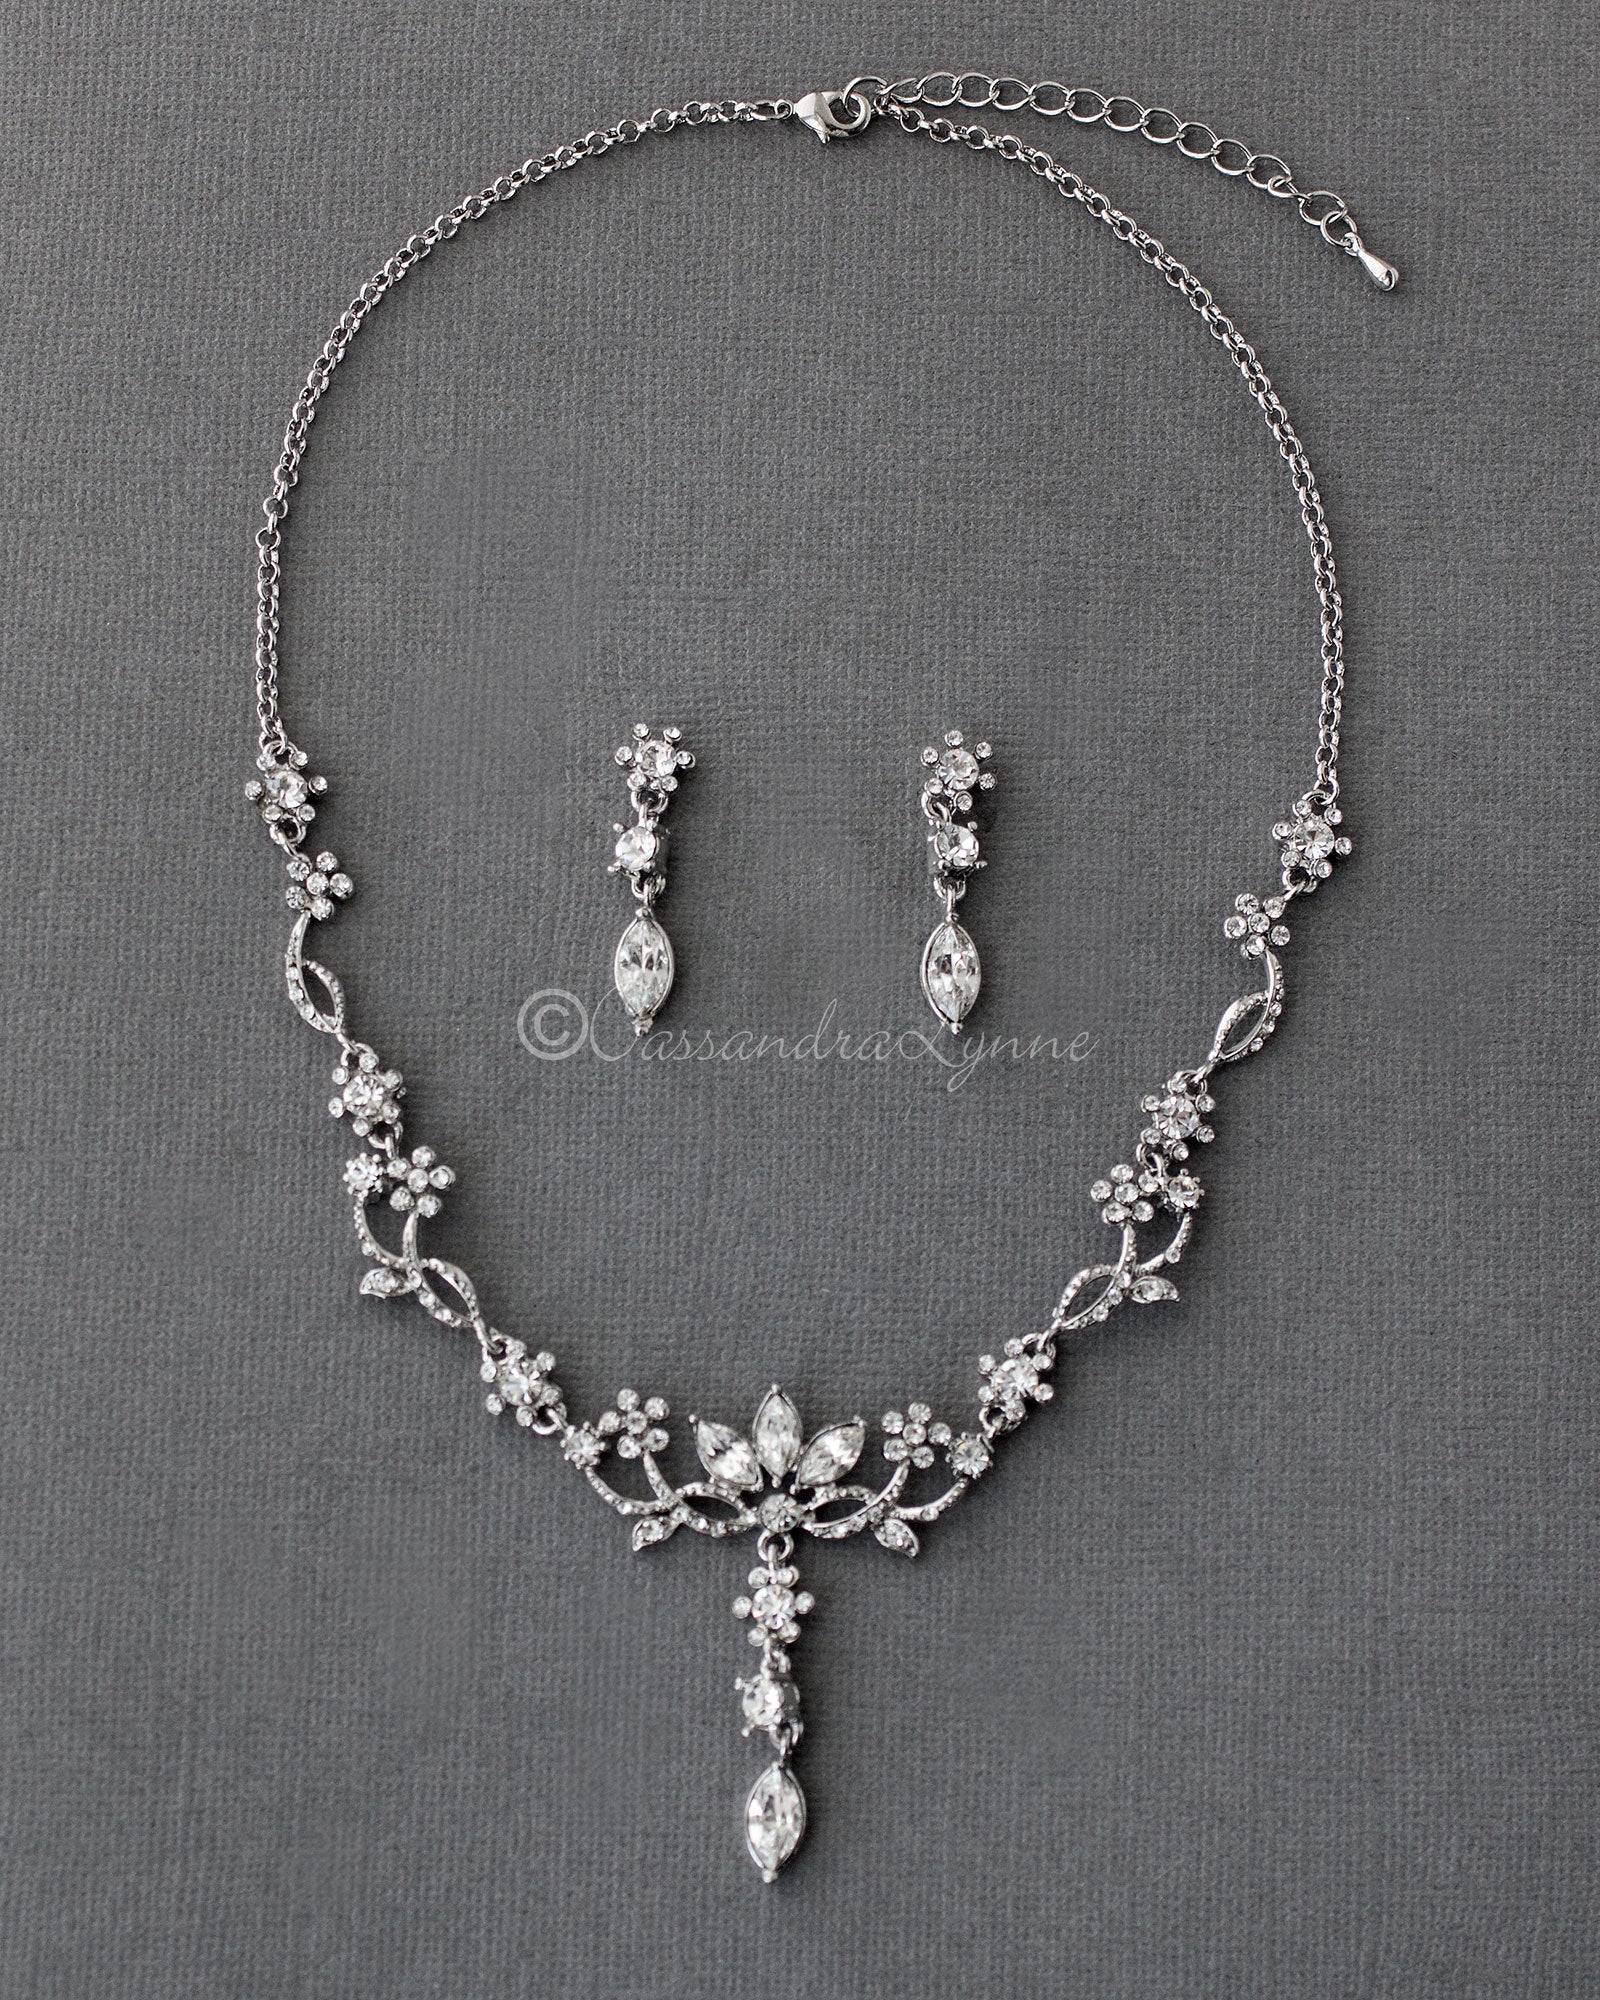 Antique Silver Flower Vine Necklace Set